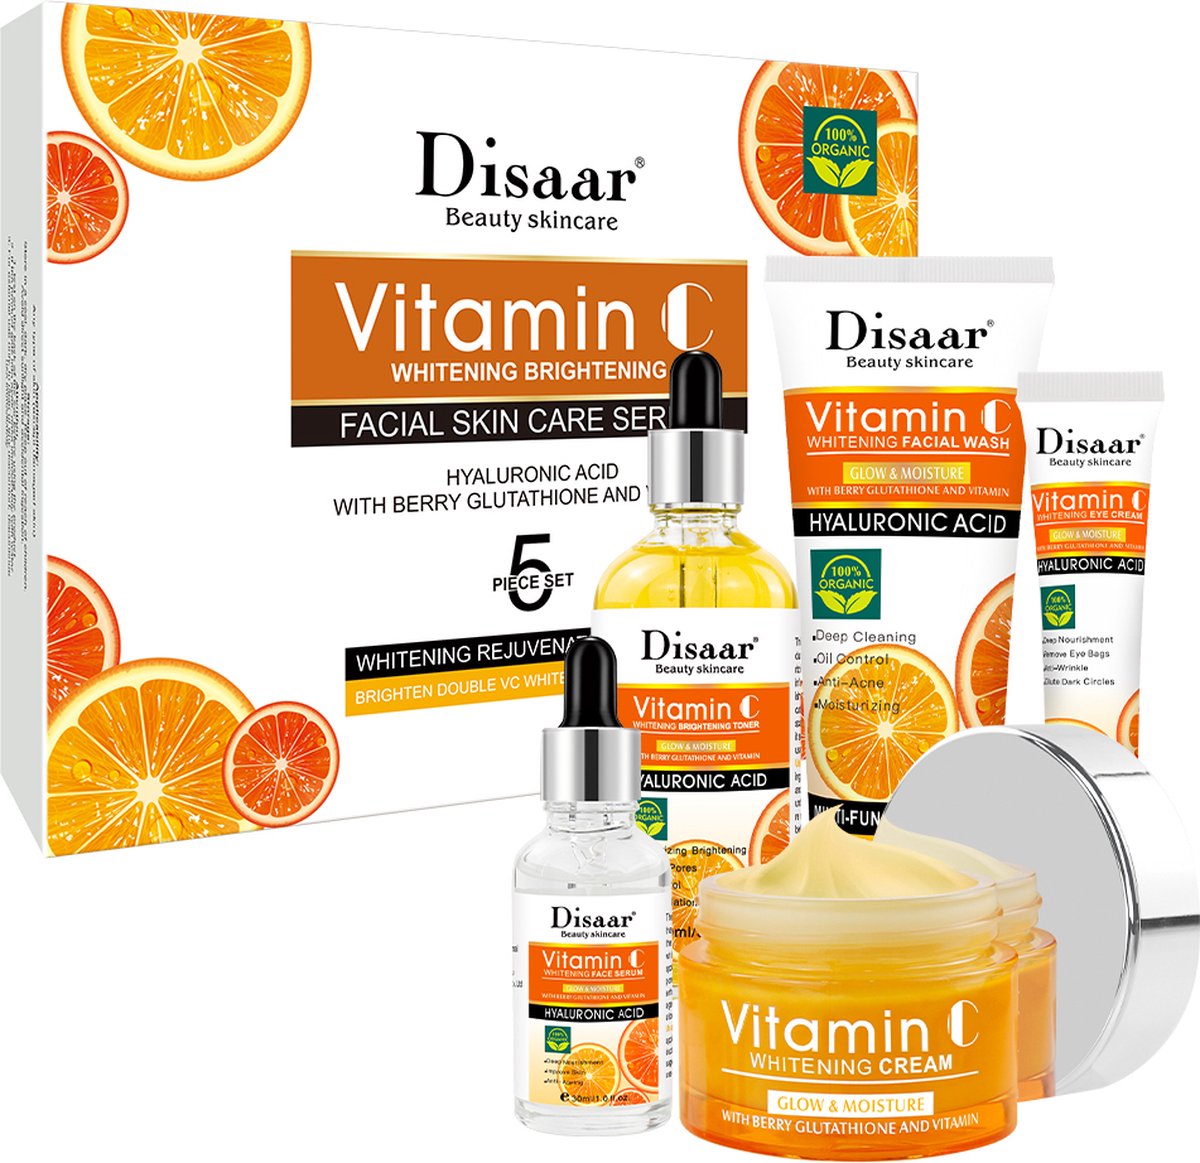 Disaar - Vitamine C whitening cadeauset met 5 producten